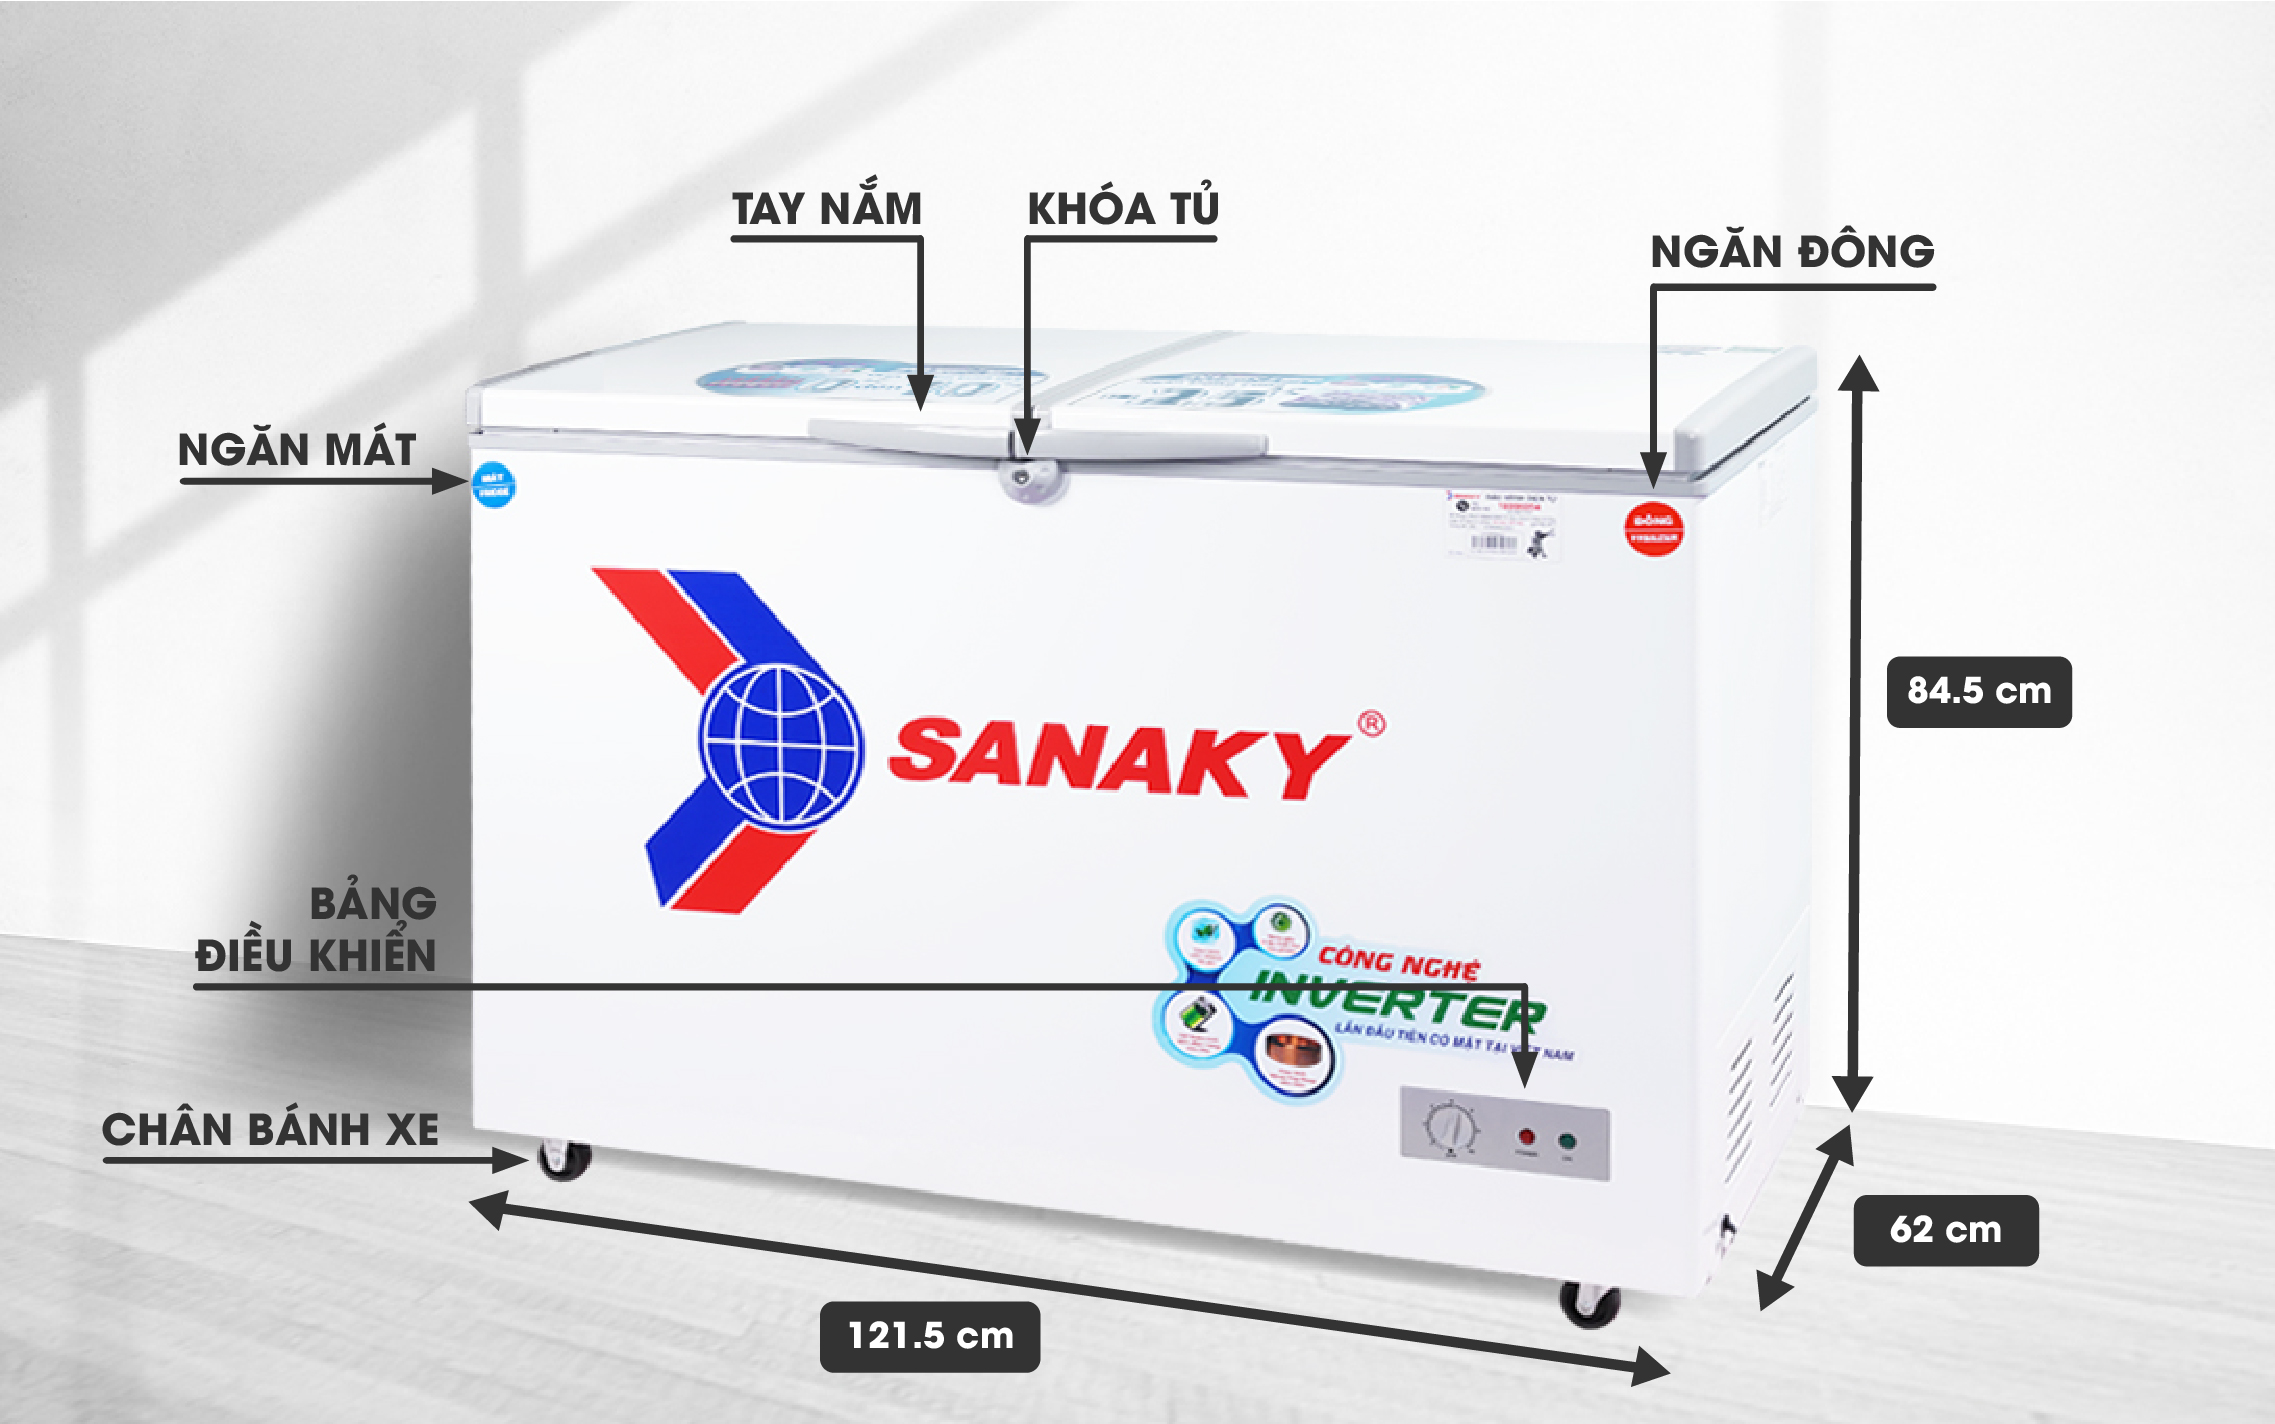 Tủ Đông Sanaky VH-3699W3